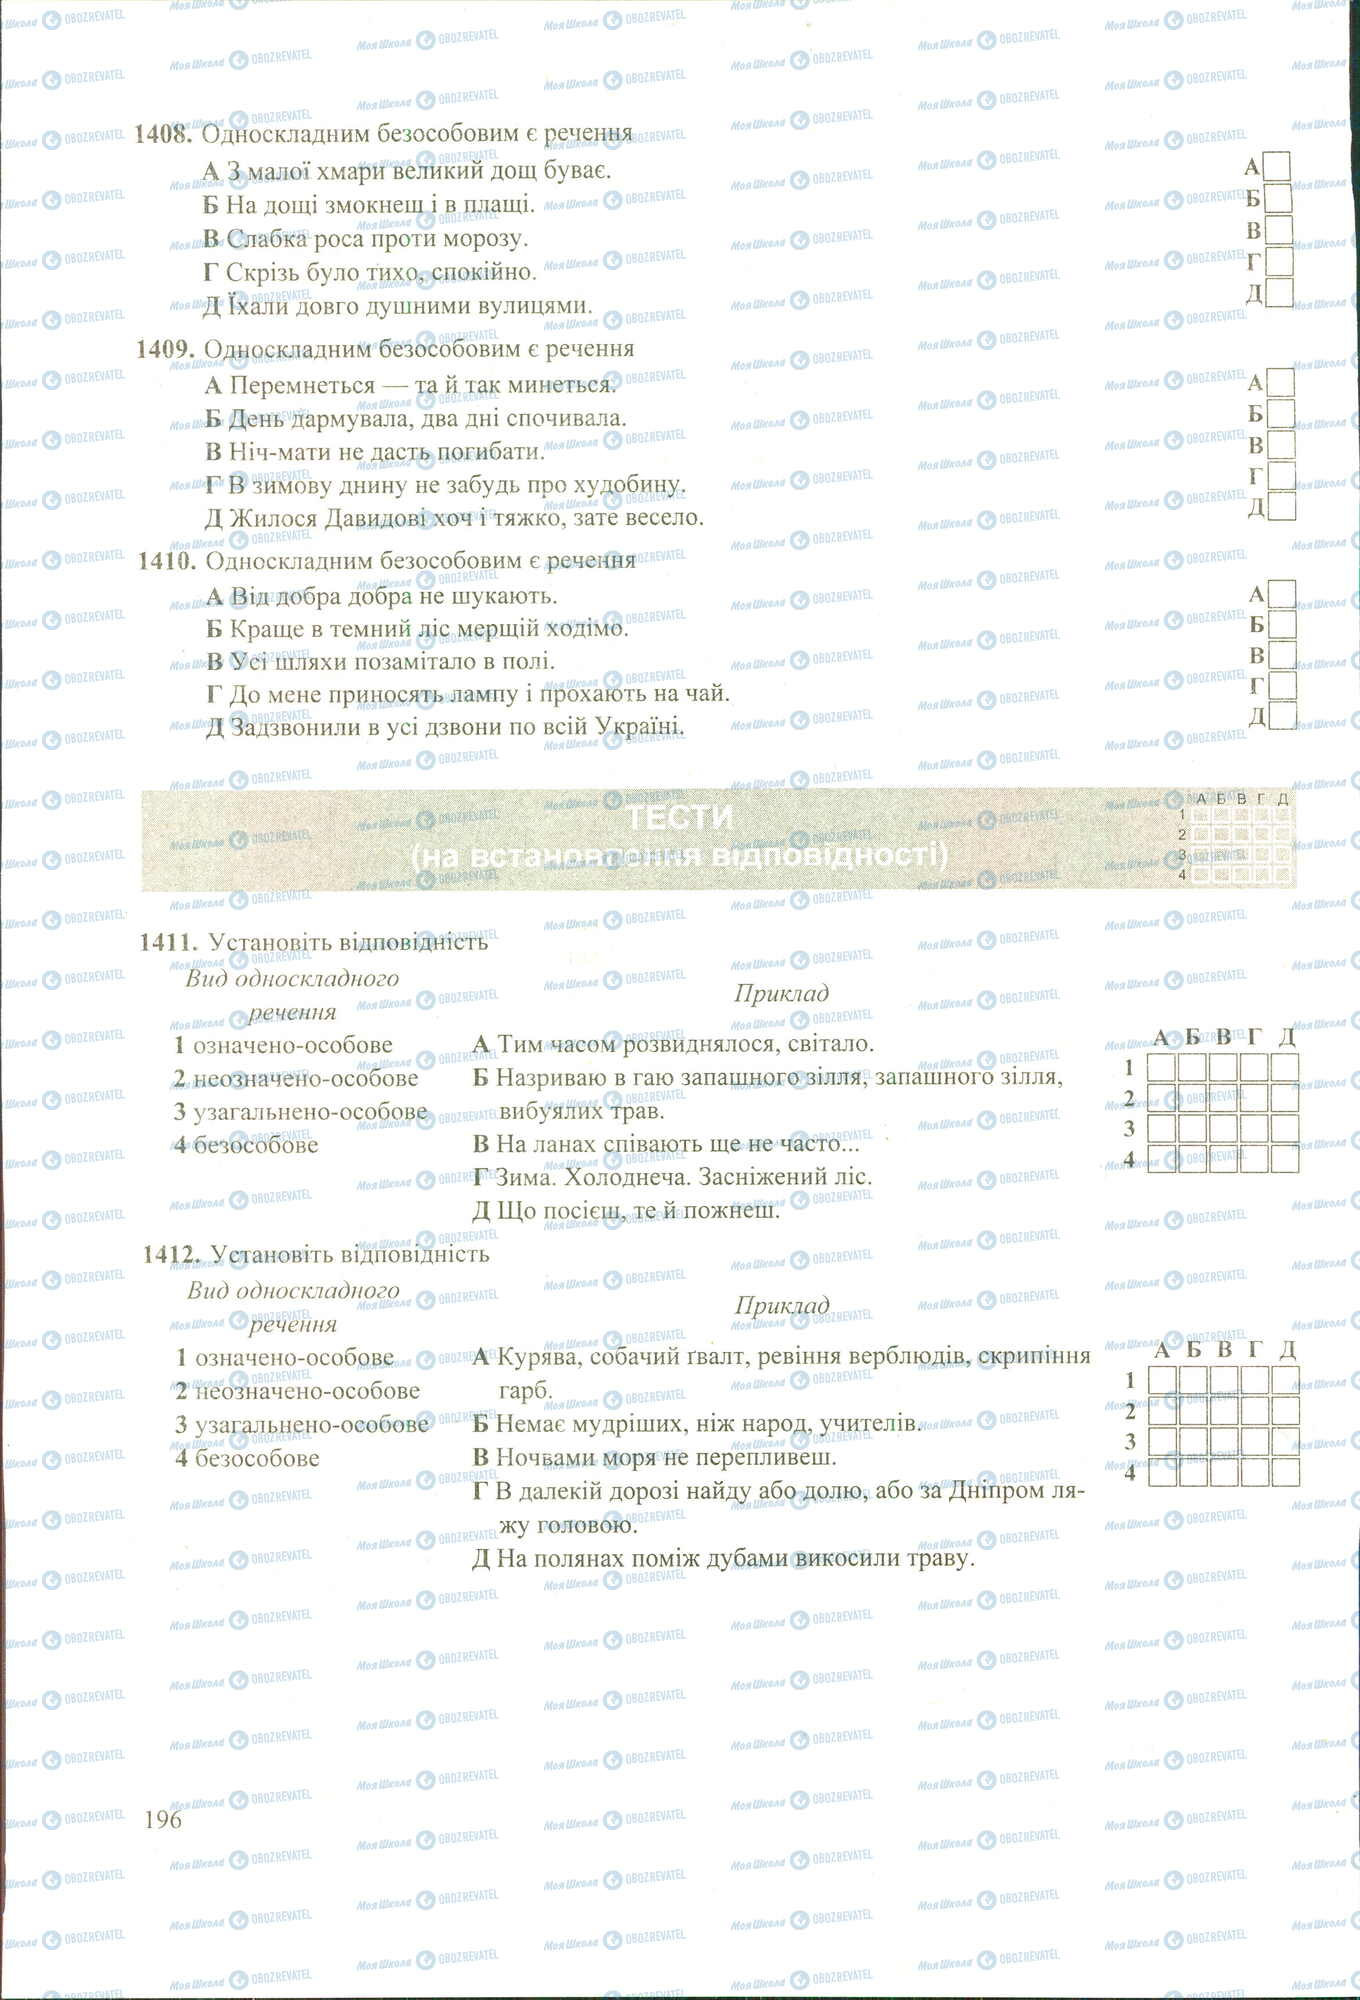 ЗНО Укр мова 11 класс страница 1408-1412